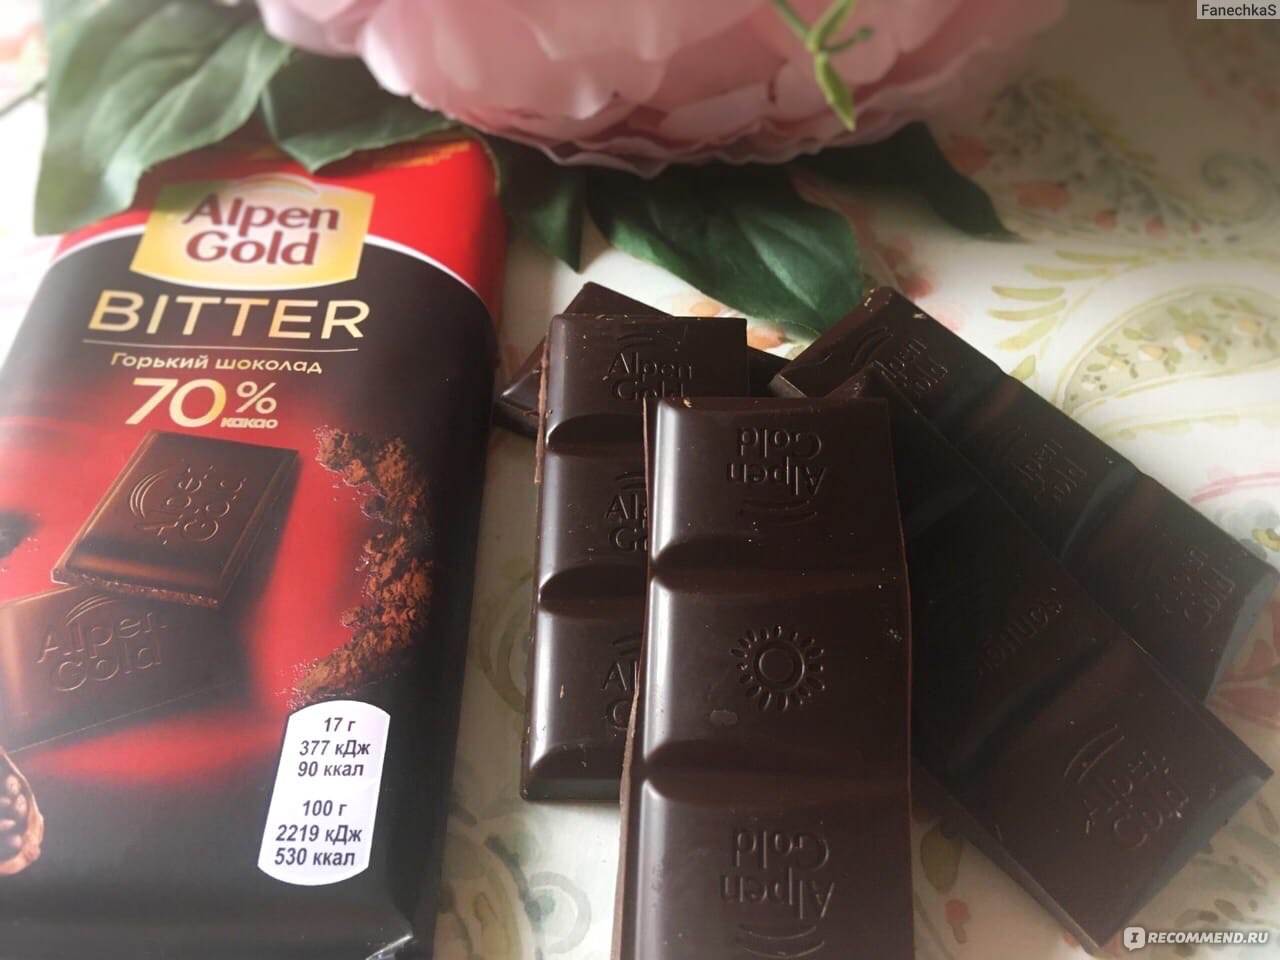 Как красиво упаковать шоколадку?